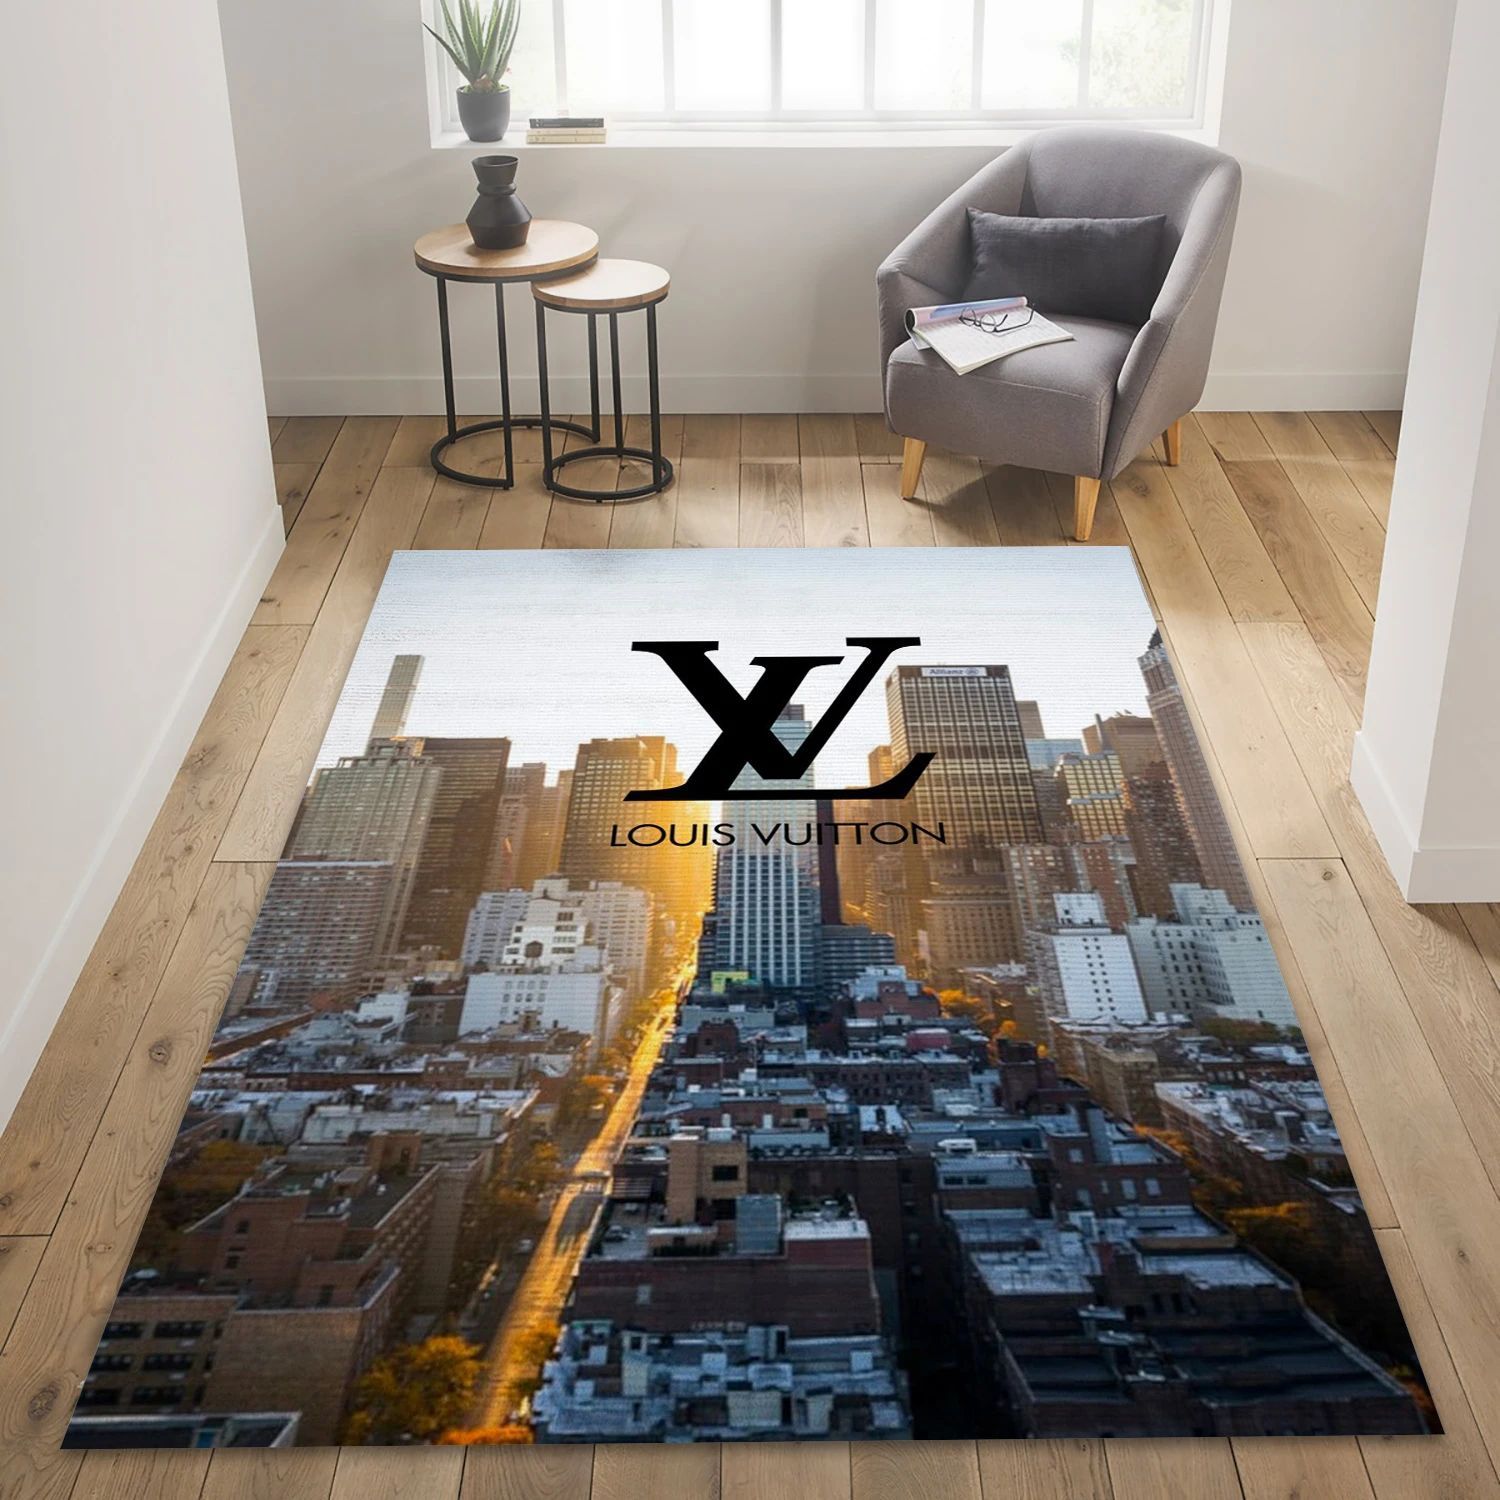 Louis Vuitton Cityscape, Bedroom Rug - Home Decor Floor Decor - Indoor Outdoor Rugs